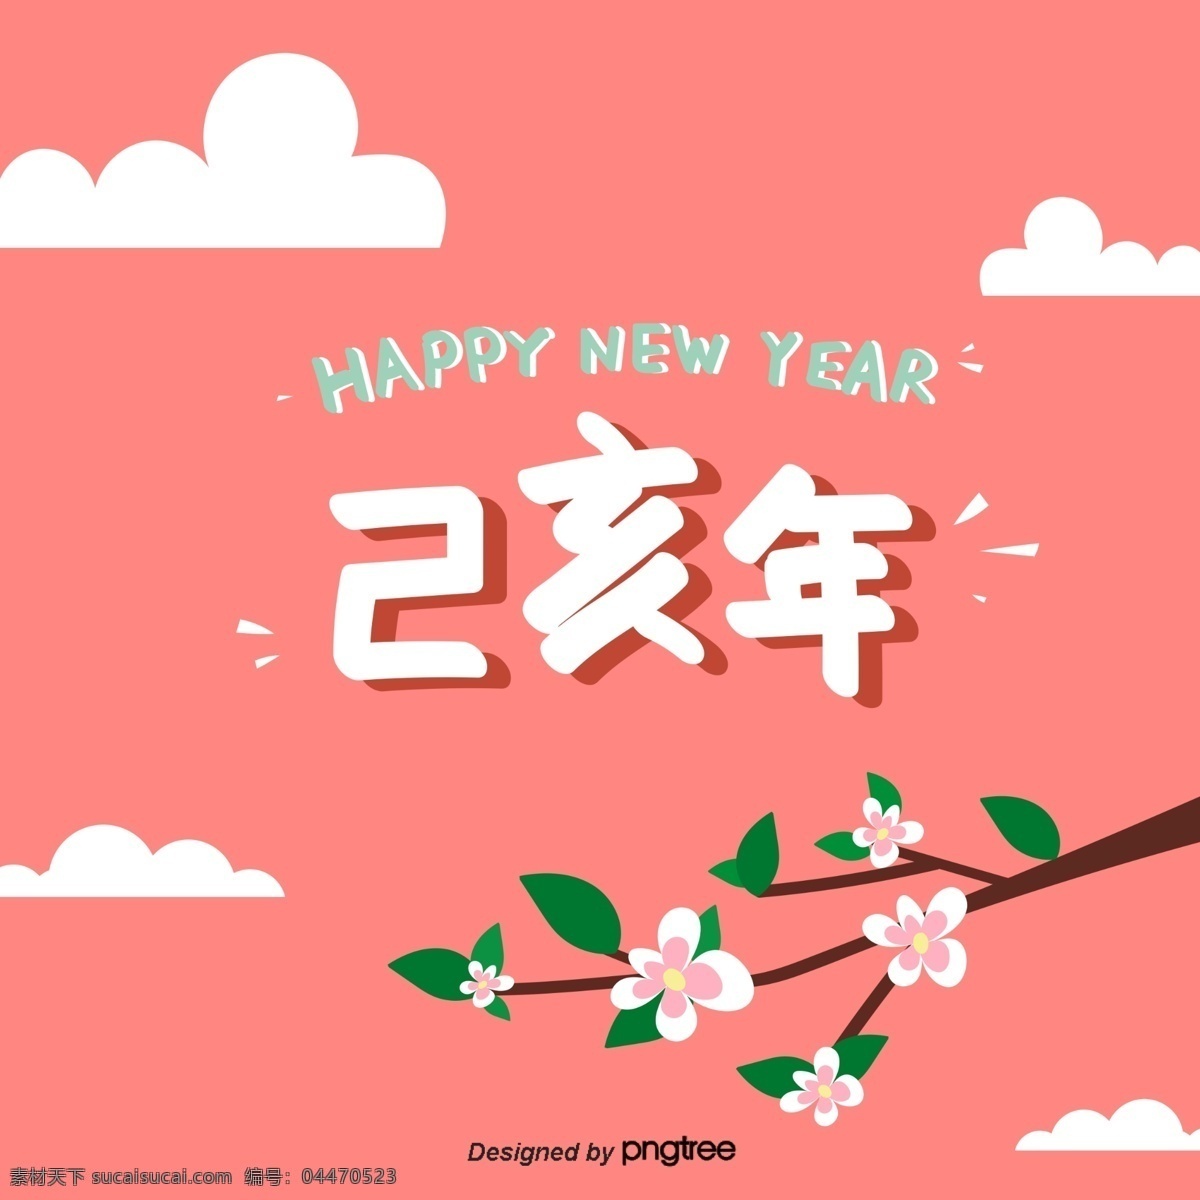 春节 中国 新年 花 城市 大 字体 2019 红色 弹簧 祝你新年快乐 新年的一天 贴纸 己嗯年 橙色背景 云